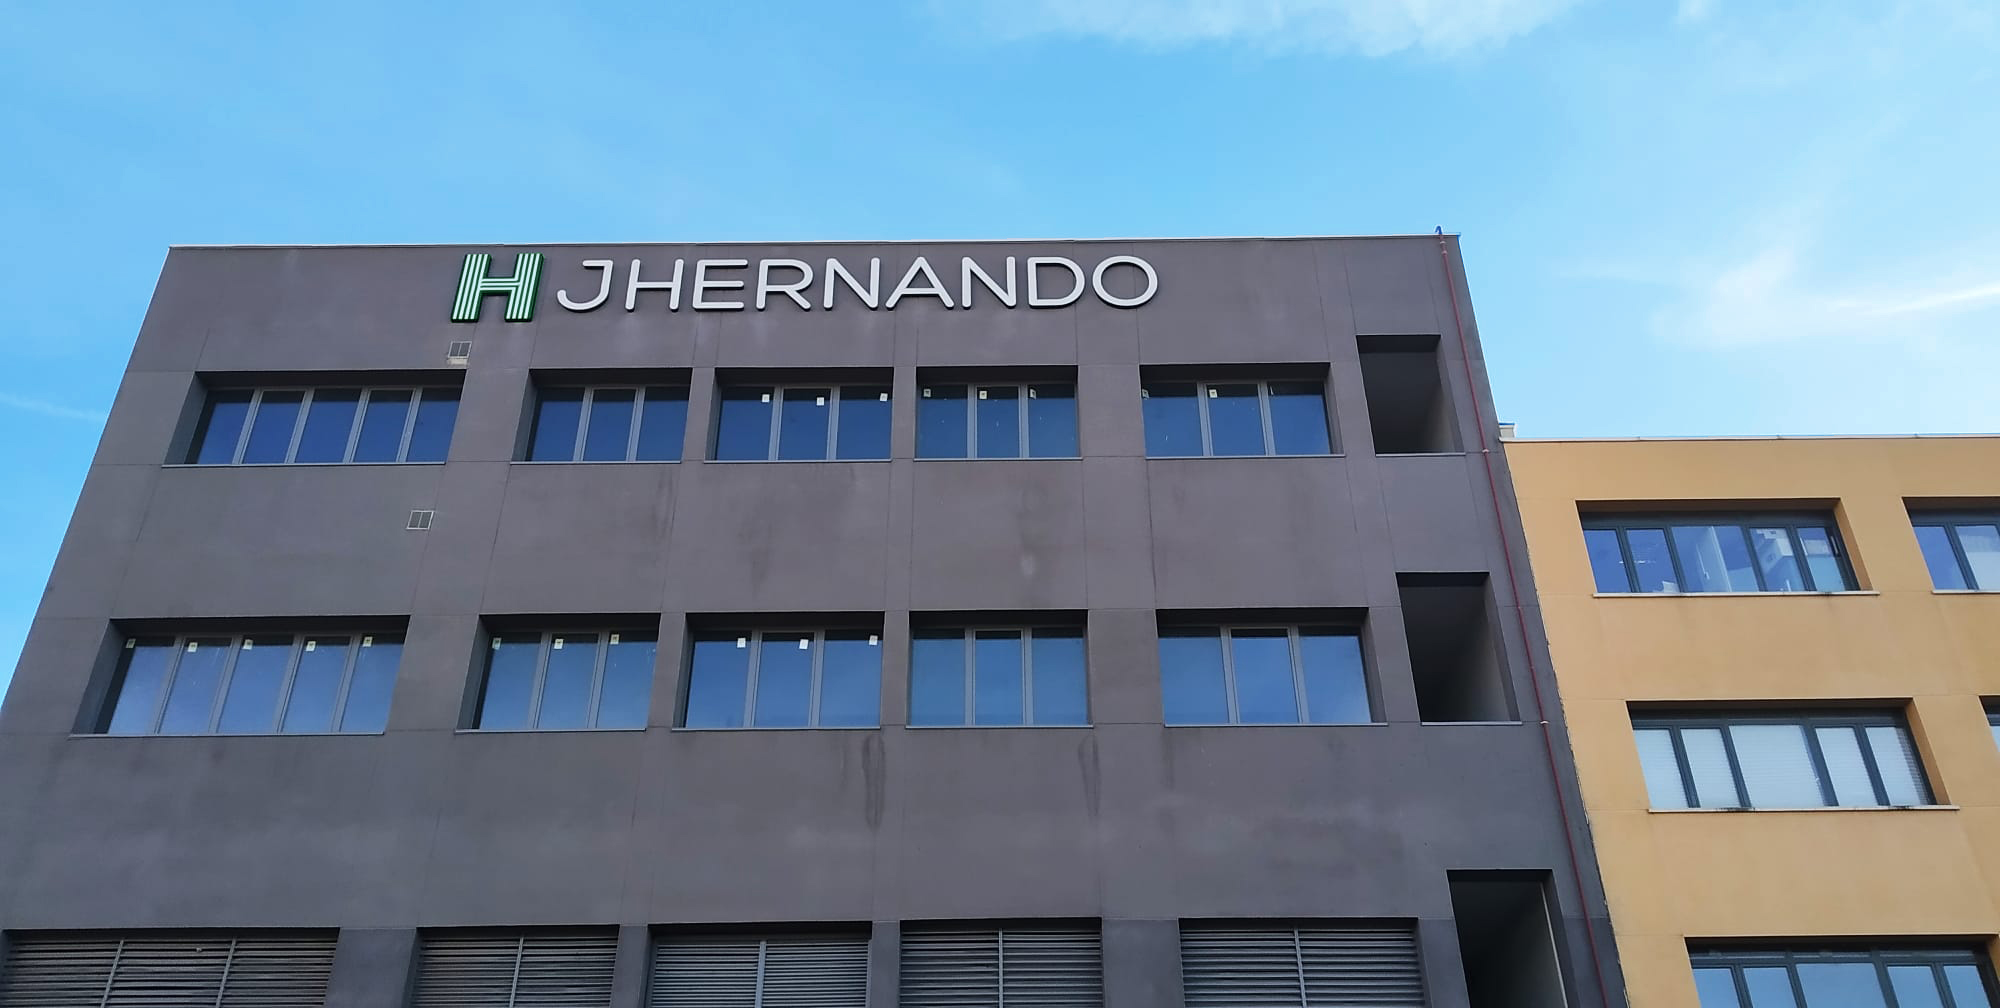 JHernando abrirá sua segunda fábrica em Madrid